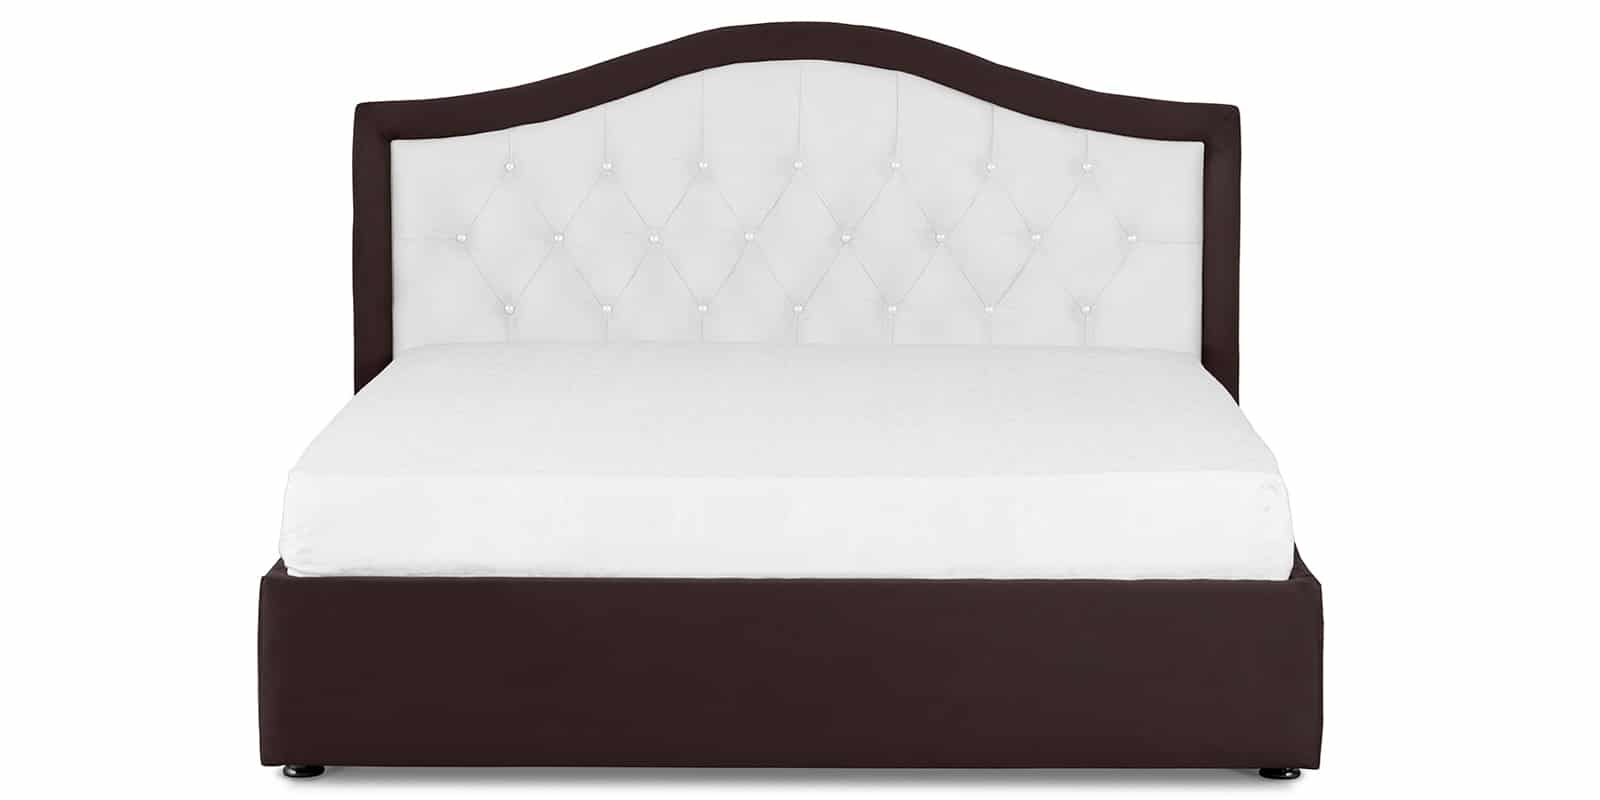 Мягкая кровать Малибу 160см экокожа белый-шоколад вариант 9-2 фото 2 | интернет-магазин Складно